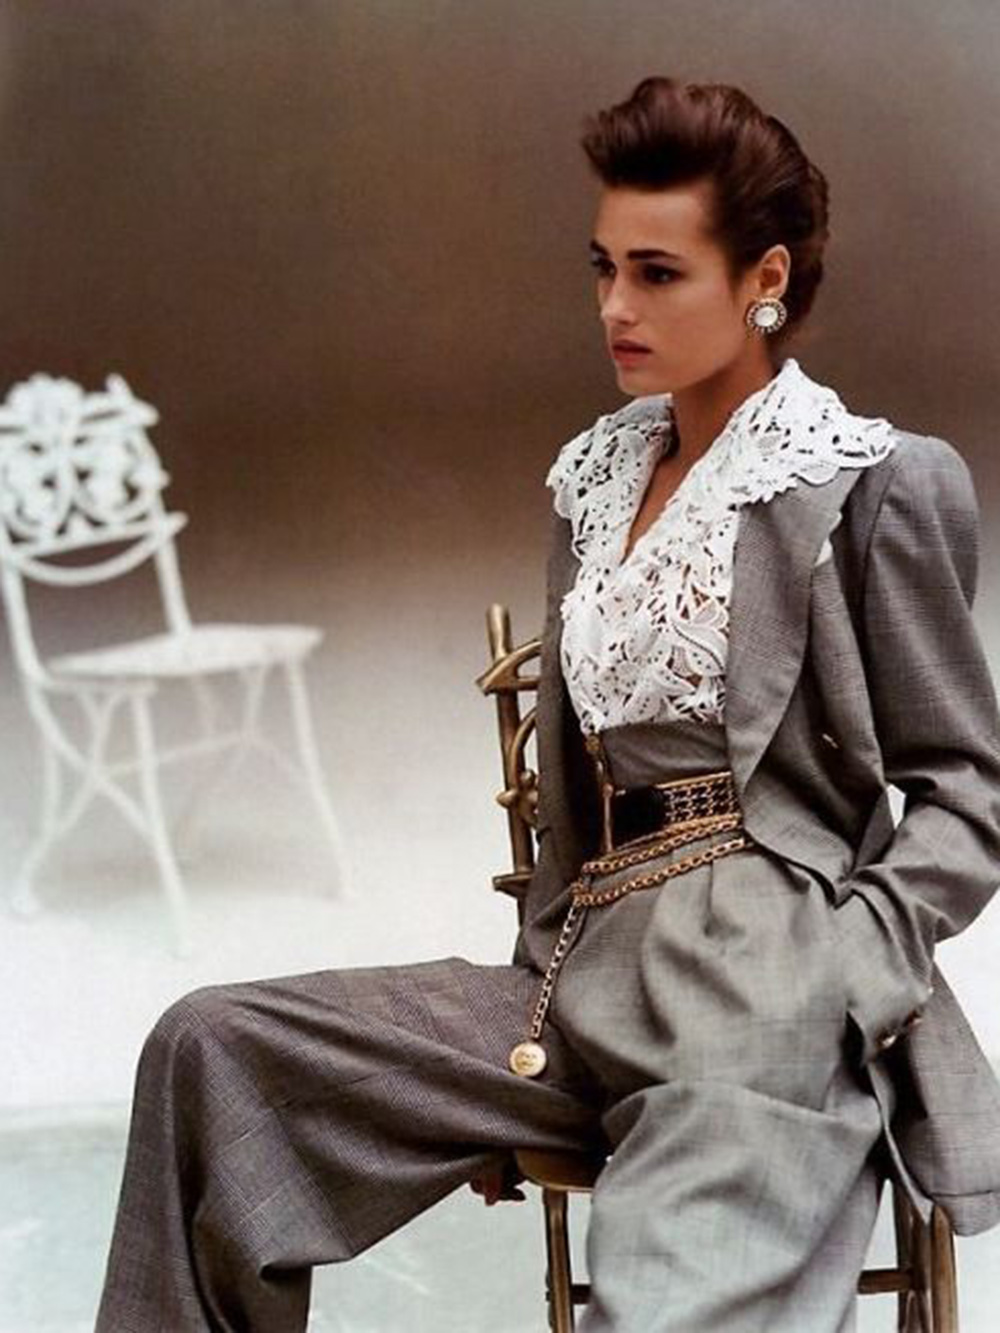 Фотография 1988 года в Vogue, тогда было меньше возможностей для ретуши. Сейчас ретушер заметил бы, что освещение на брюках неравномерное. Если это не особенность ткани, такие детали исправляют. Источник: yasminlebon.net